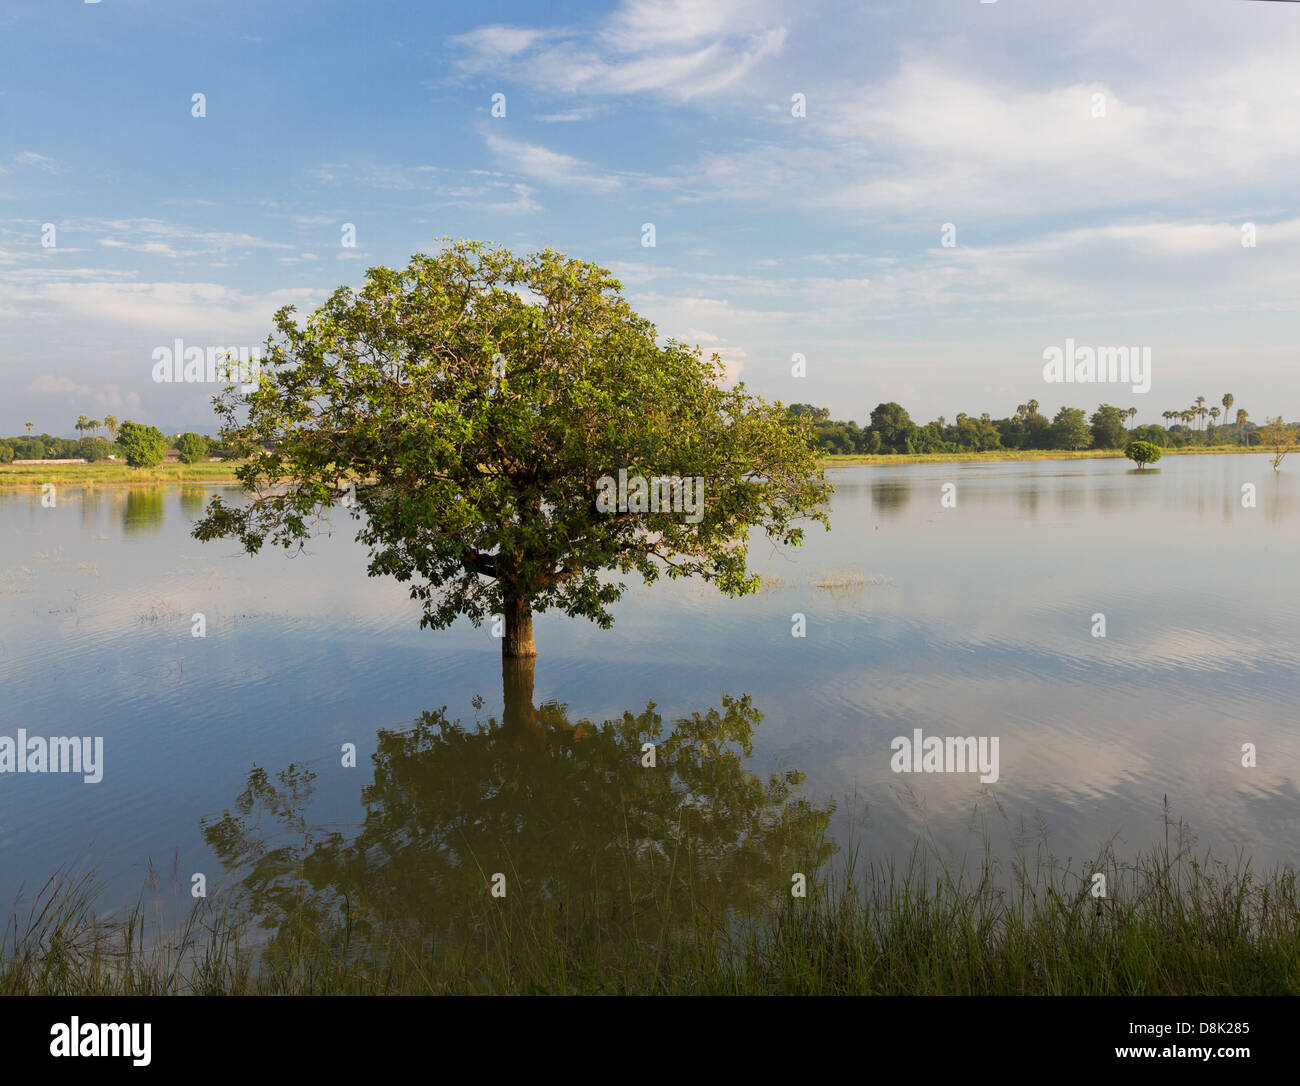 tree and sky reflect in lake in lush green tropic scenery near Mandalay, Burma Stock Photo